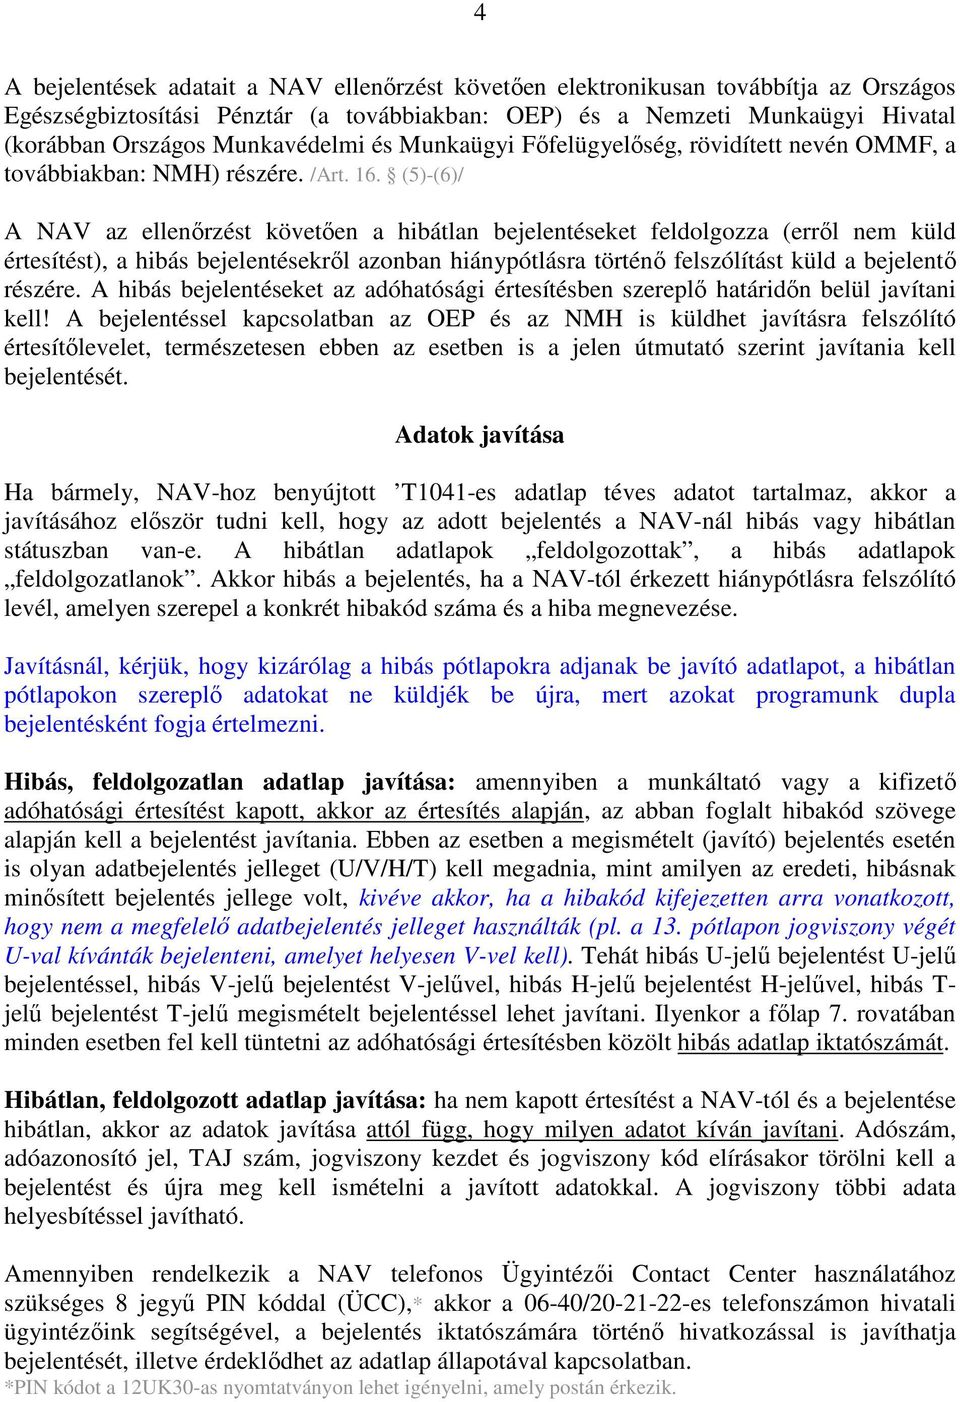 (5)-(6)/ A NAV az ellenırzést követıen a hibátlan bejelentéseket feldolgozza (errıl nem küld értesítést), a hibás bejelentésekrıl azonban hiánypótlásra történı felszólítást küld a bejelentı részére.